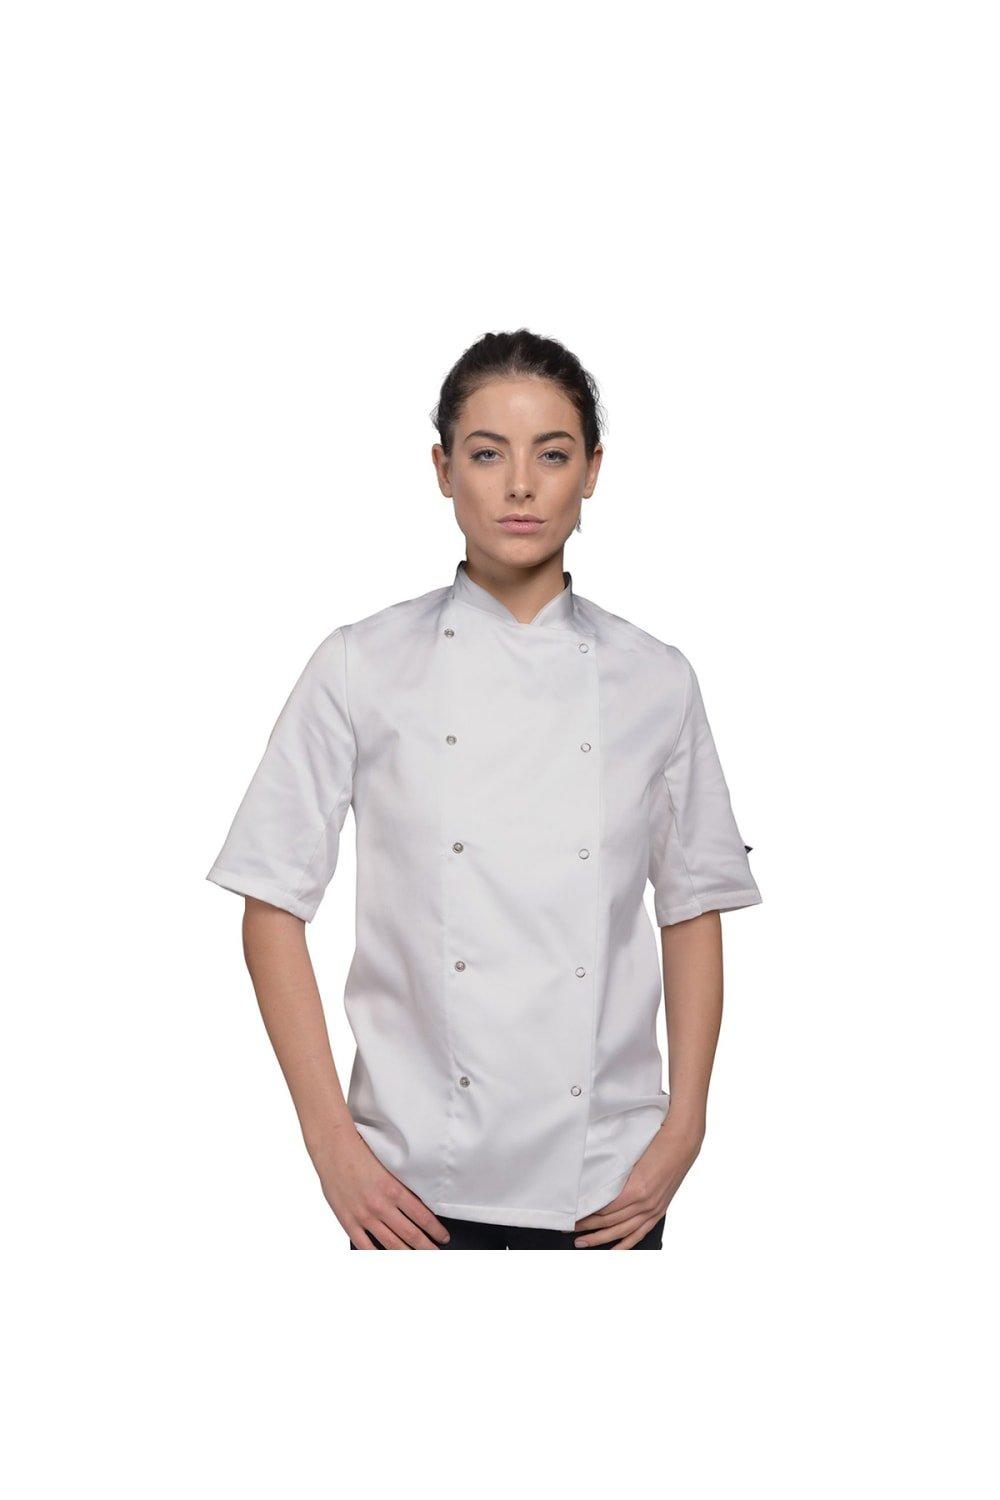 Легкая куртка шеф-повара с короткими рукавами Одежда для шеф-повара (2 шт.) Dennys, белый